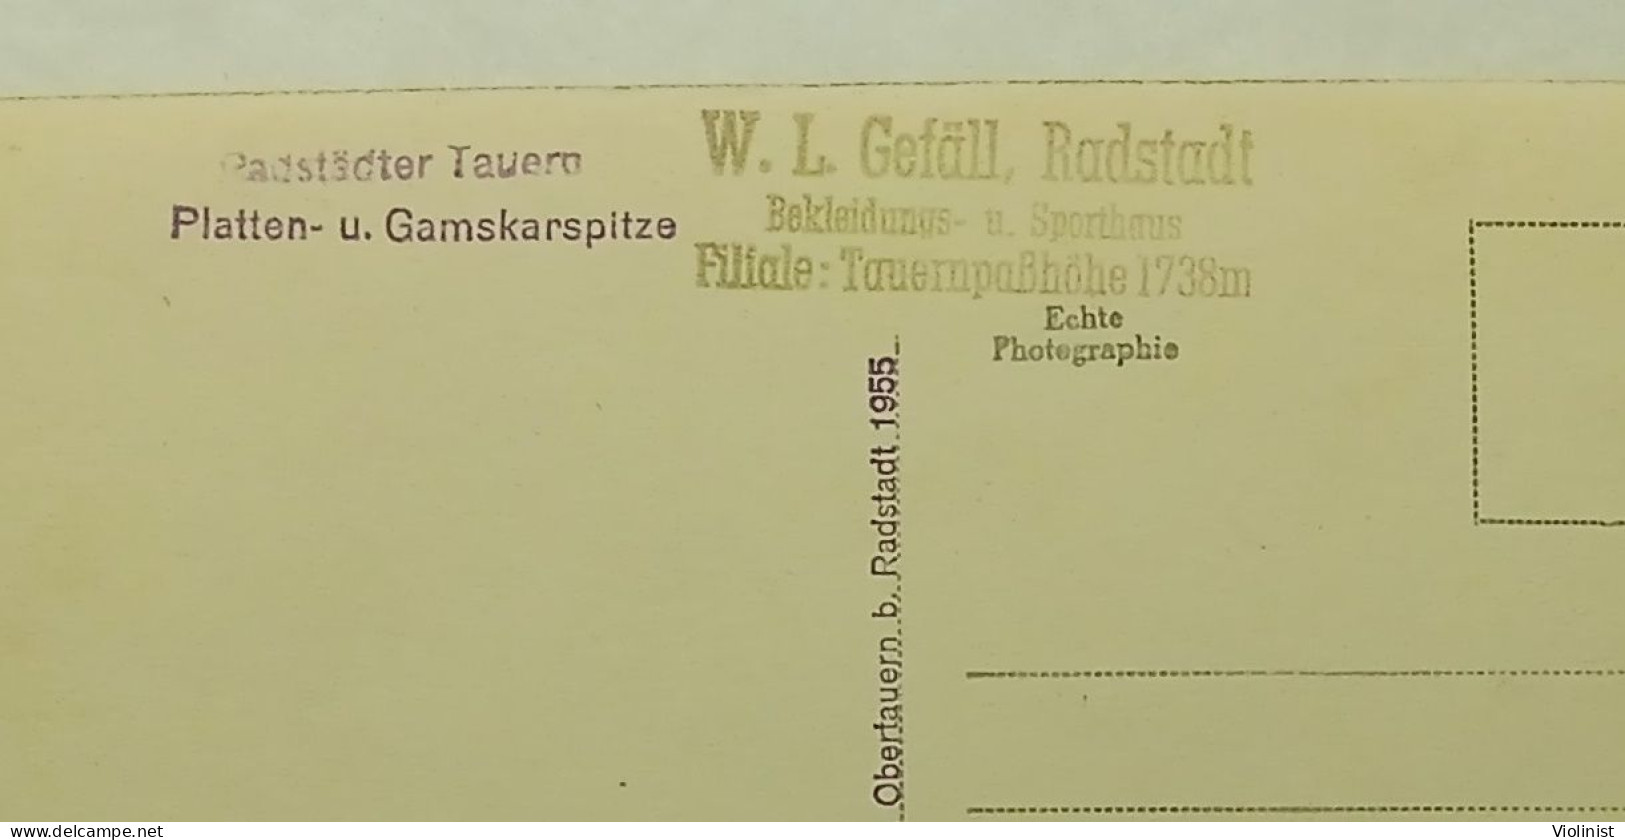 Austria-Radstädter Tauern-Platten-u.Gamskarspitze-Photo H.Helff,Obertauern b.Radstadt 1955.